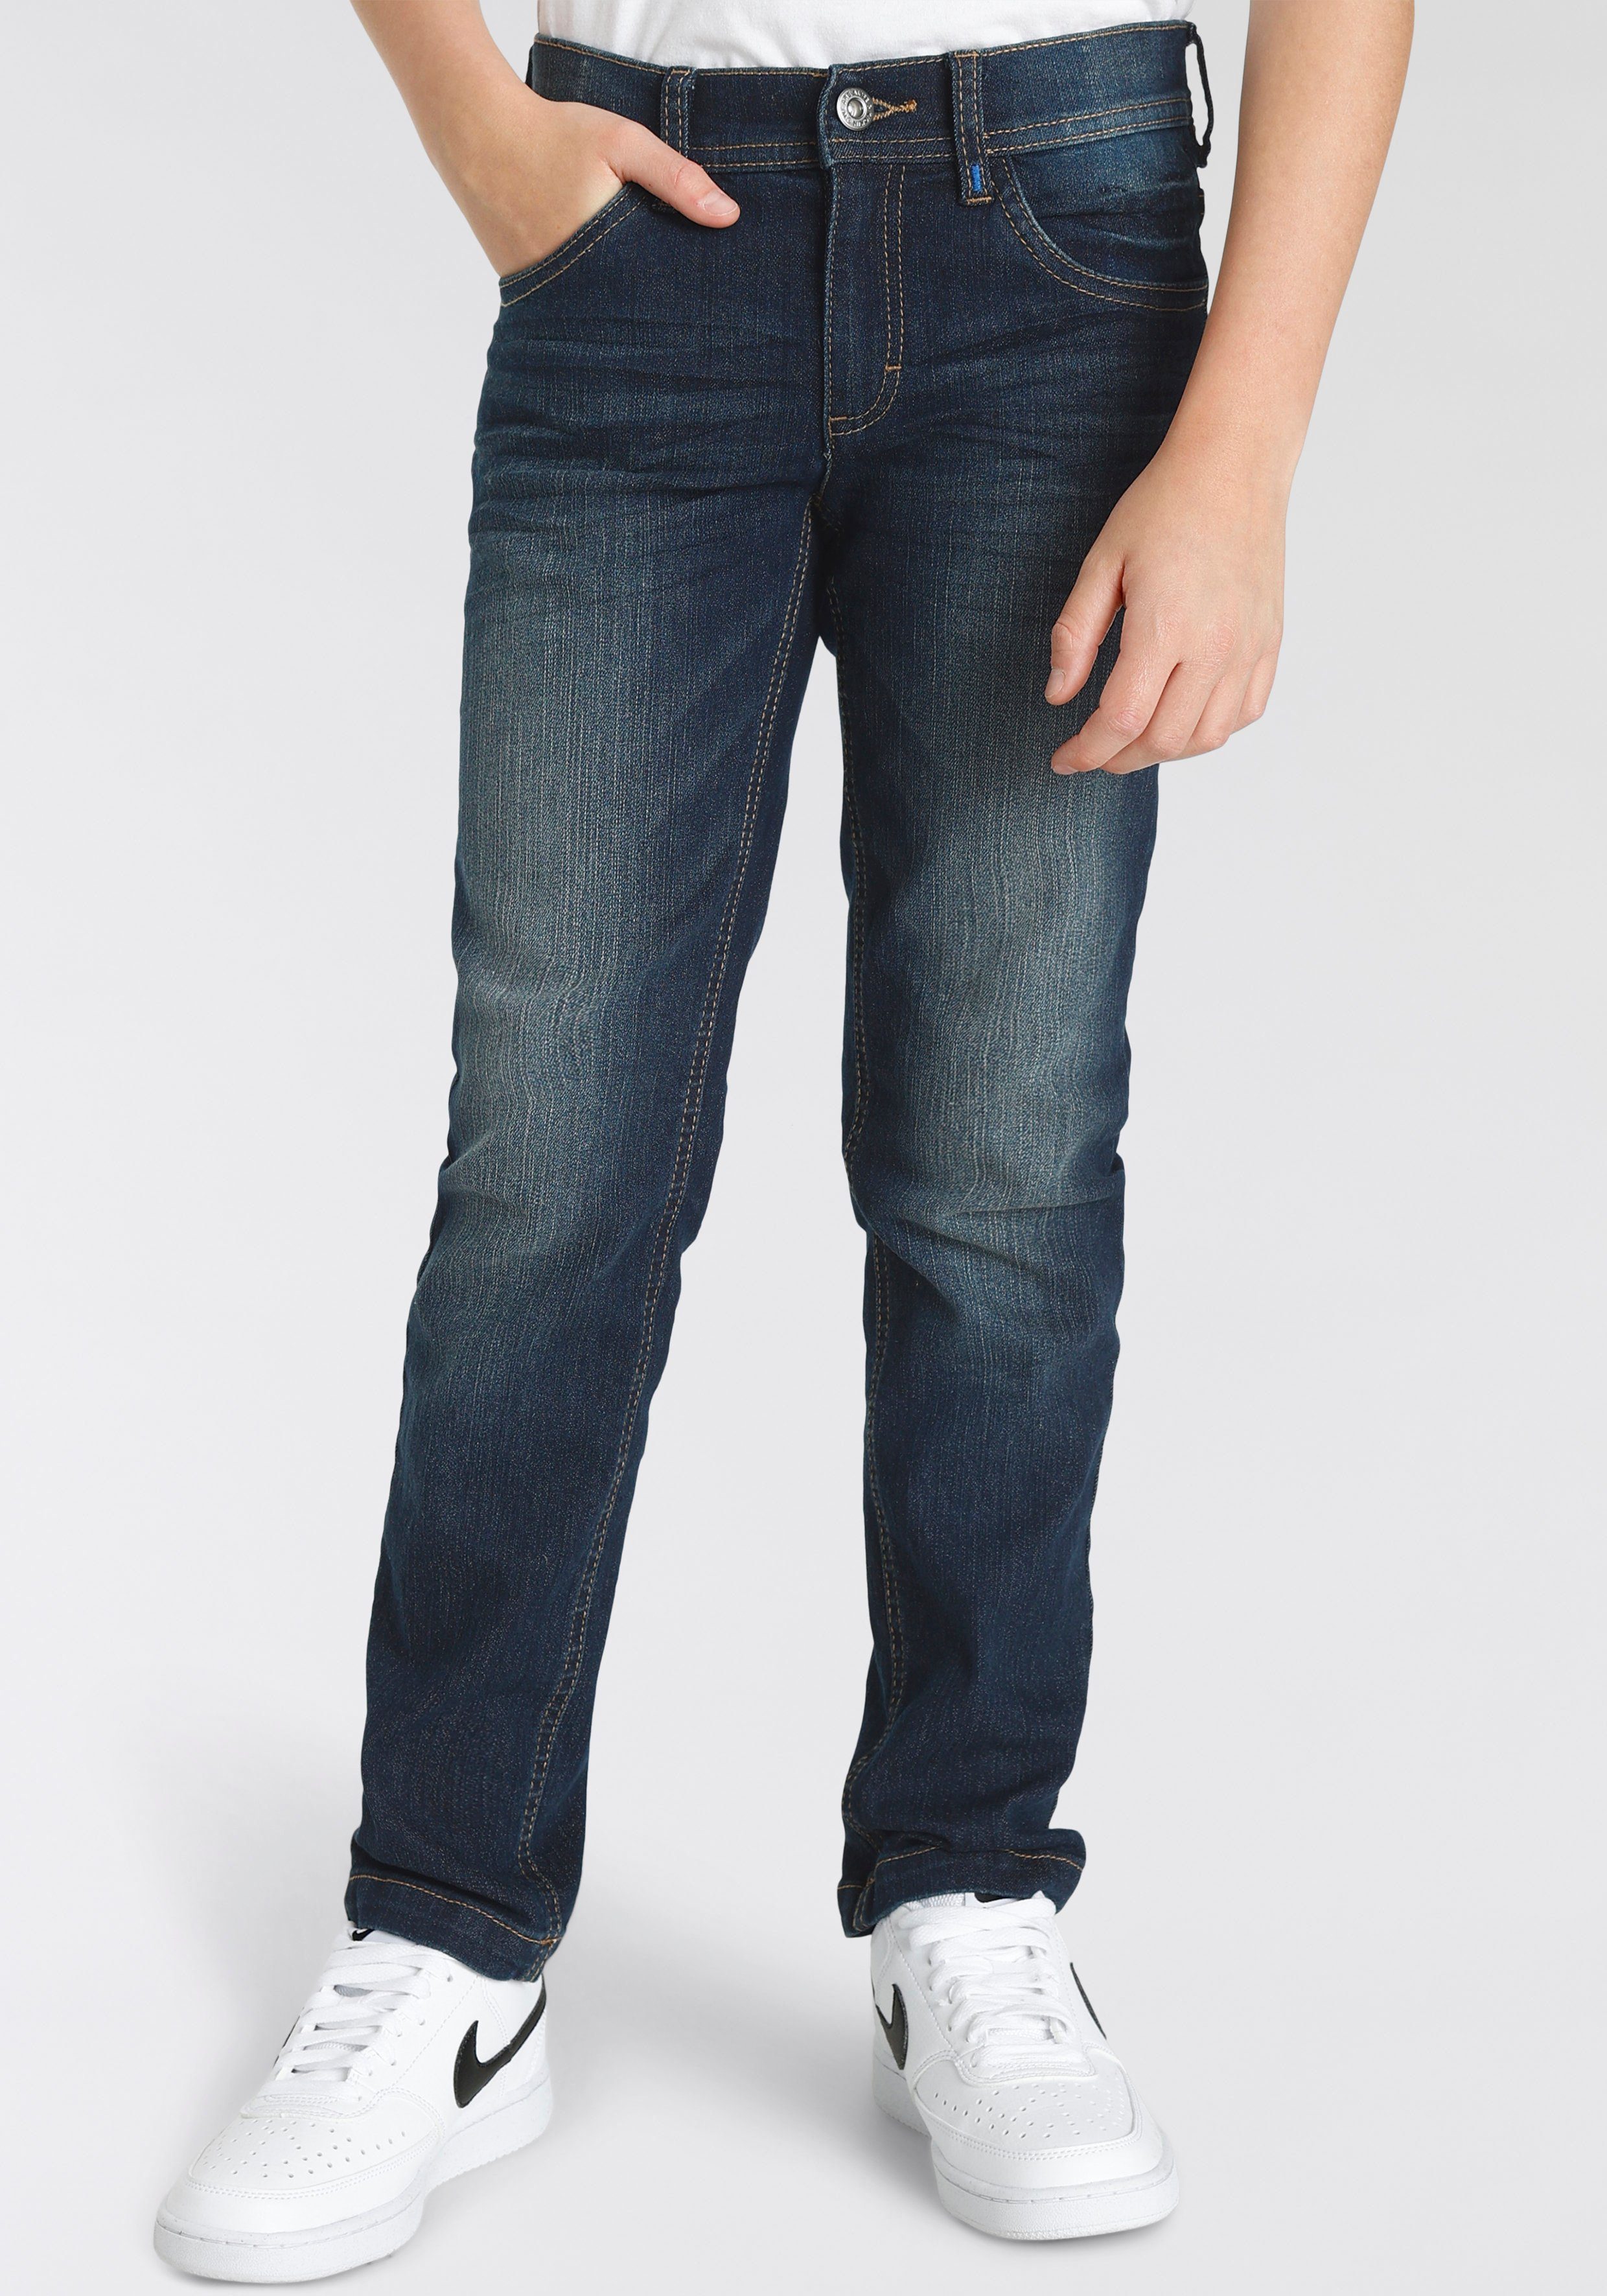 Alife & für mit Logo-Print Kickin Hosenbund, Jungen Straight-Jeans schmale Form im